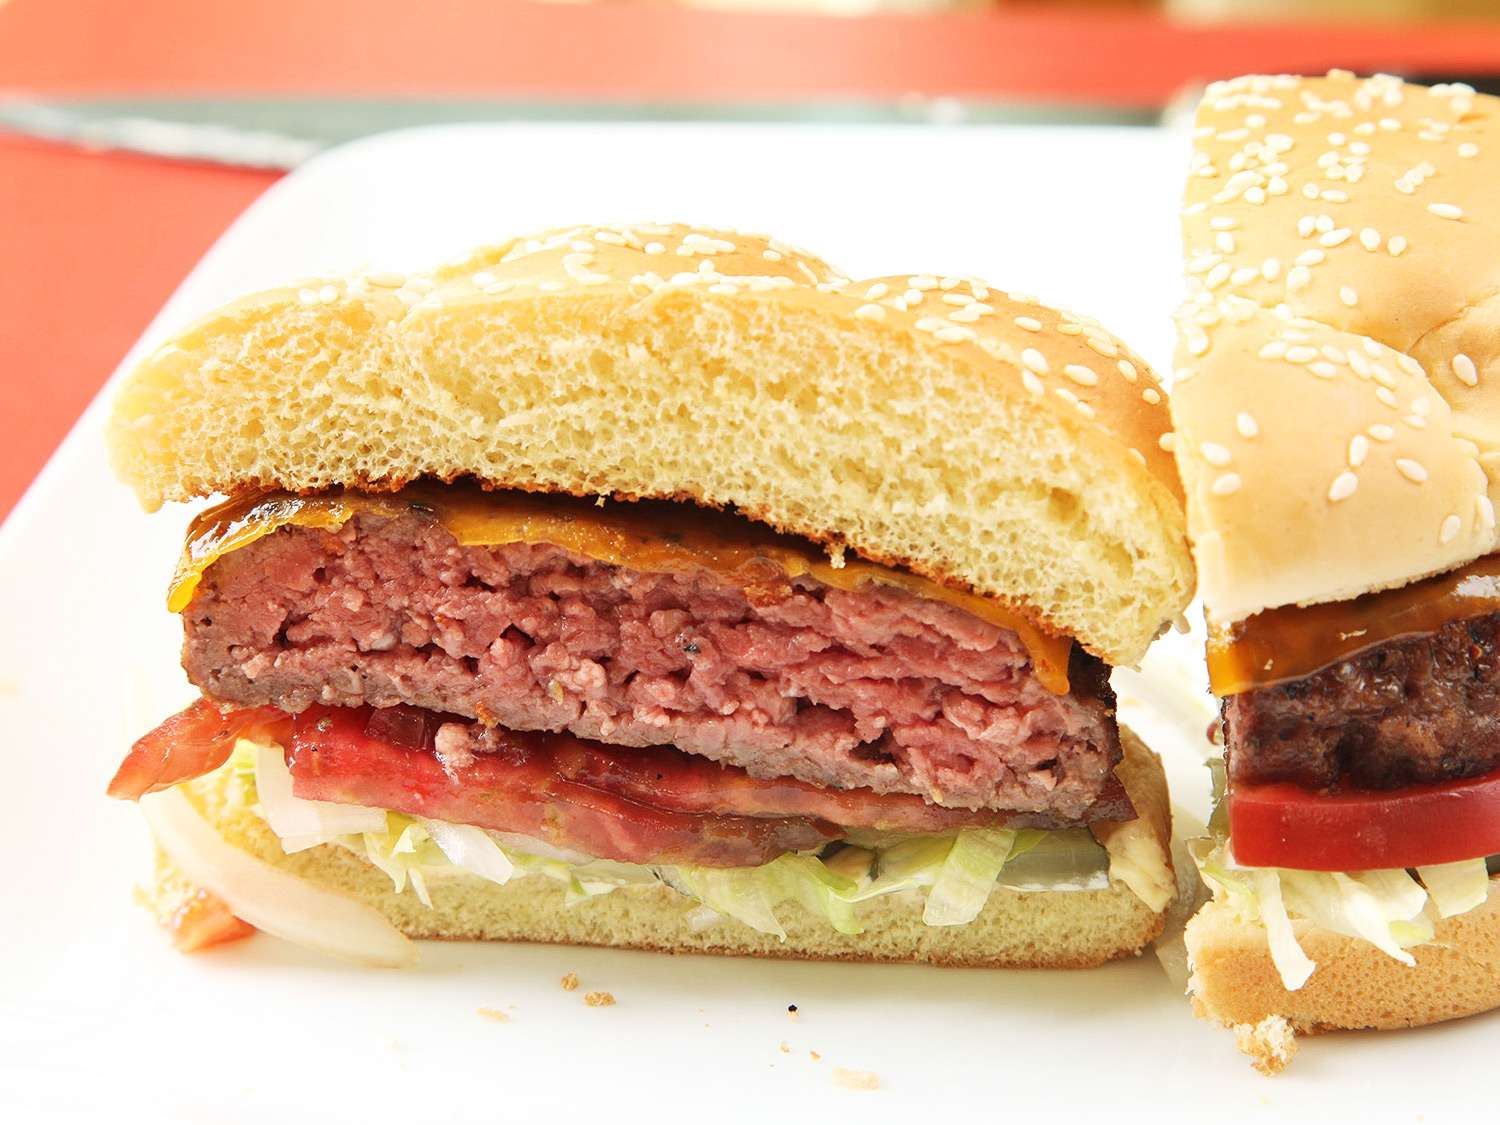 一张用真空烹调的芝士汉堡的横截面照片，配上生菜和西红柿放在芝麻面包上。gydF4y2Ba